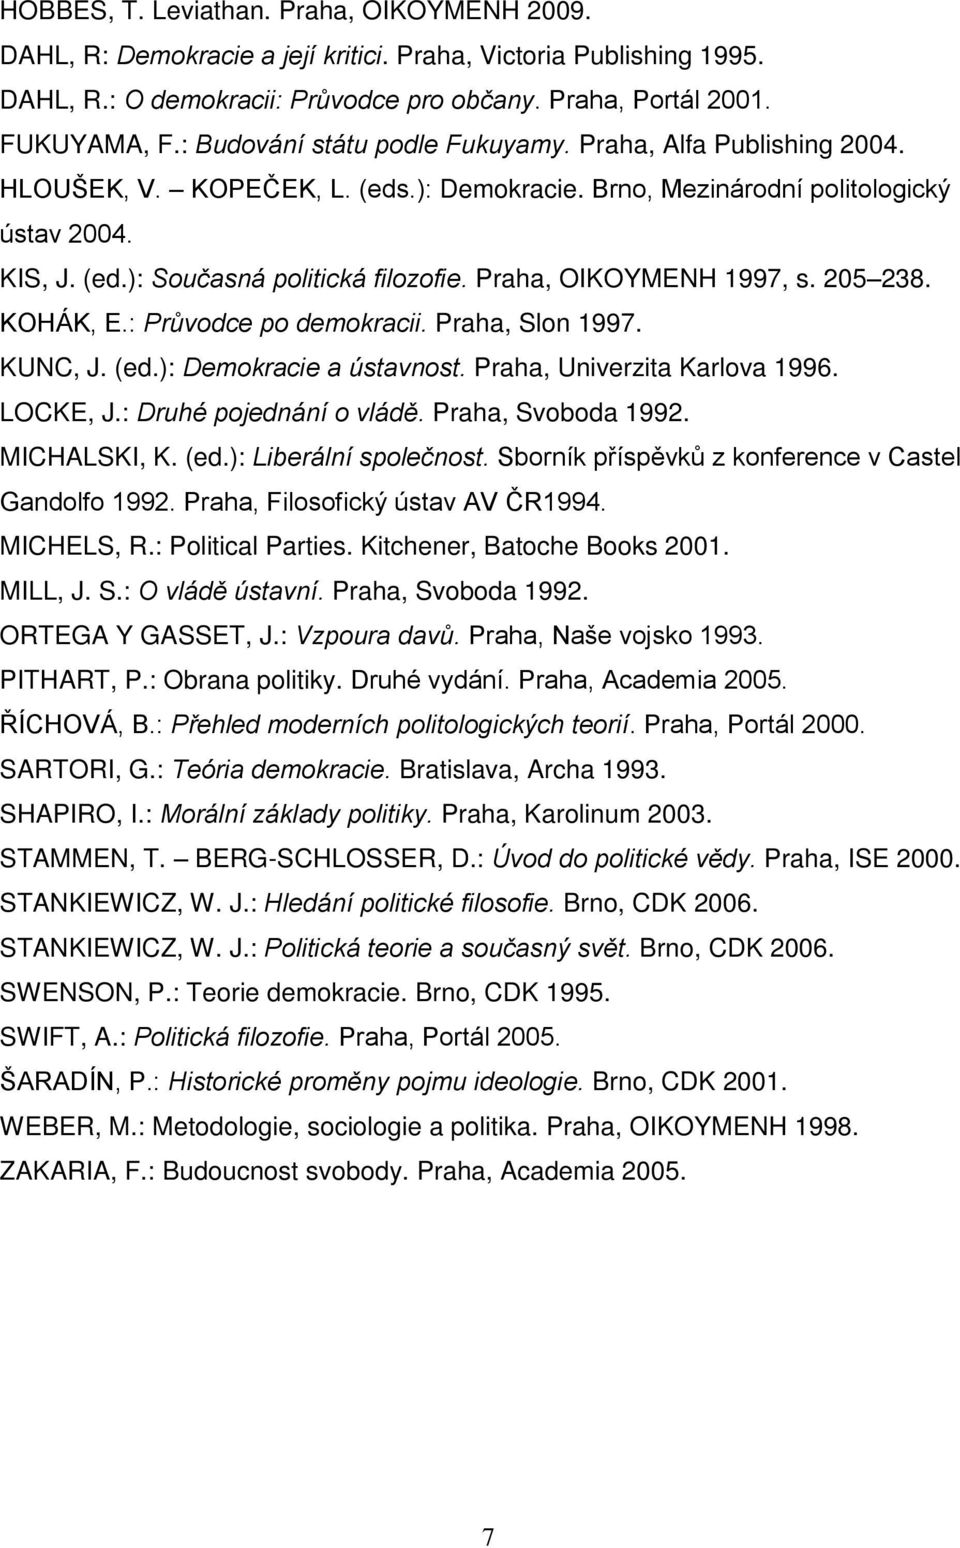 Praha, OIKOYMENH 1997, s. 205 238. KOHÁK, E.: Průvodce po demokracii. Praha, Slon 1997. KUNC, J. (ed.): Demokracie a ústavnost. Praha, Univerzita Karlova 1996. LOCKE, J.: Druhé pojednání o vládě.